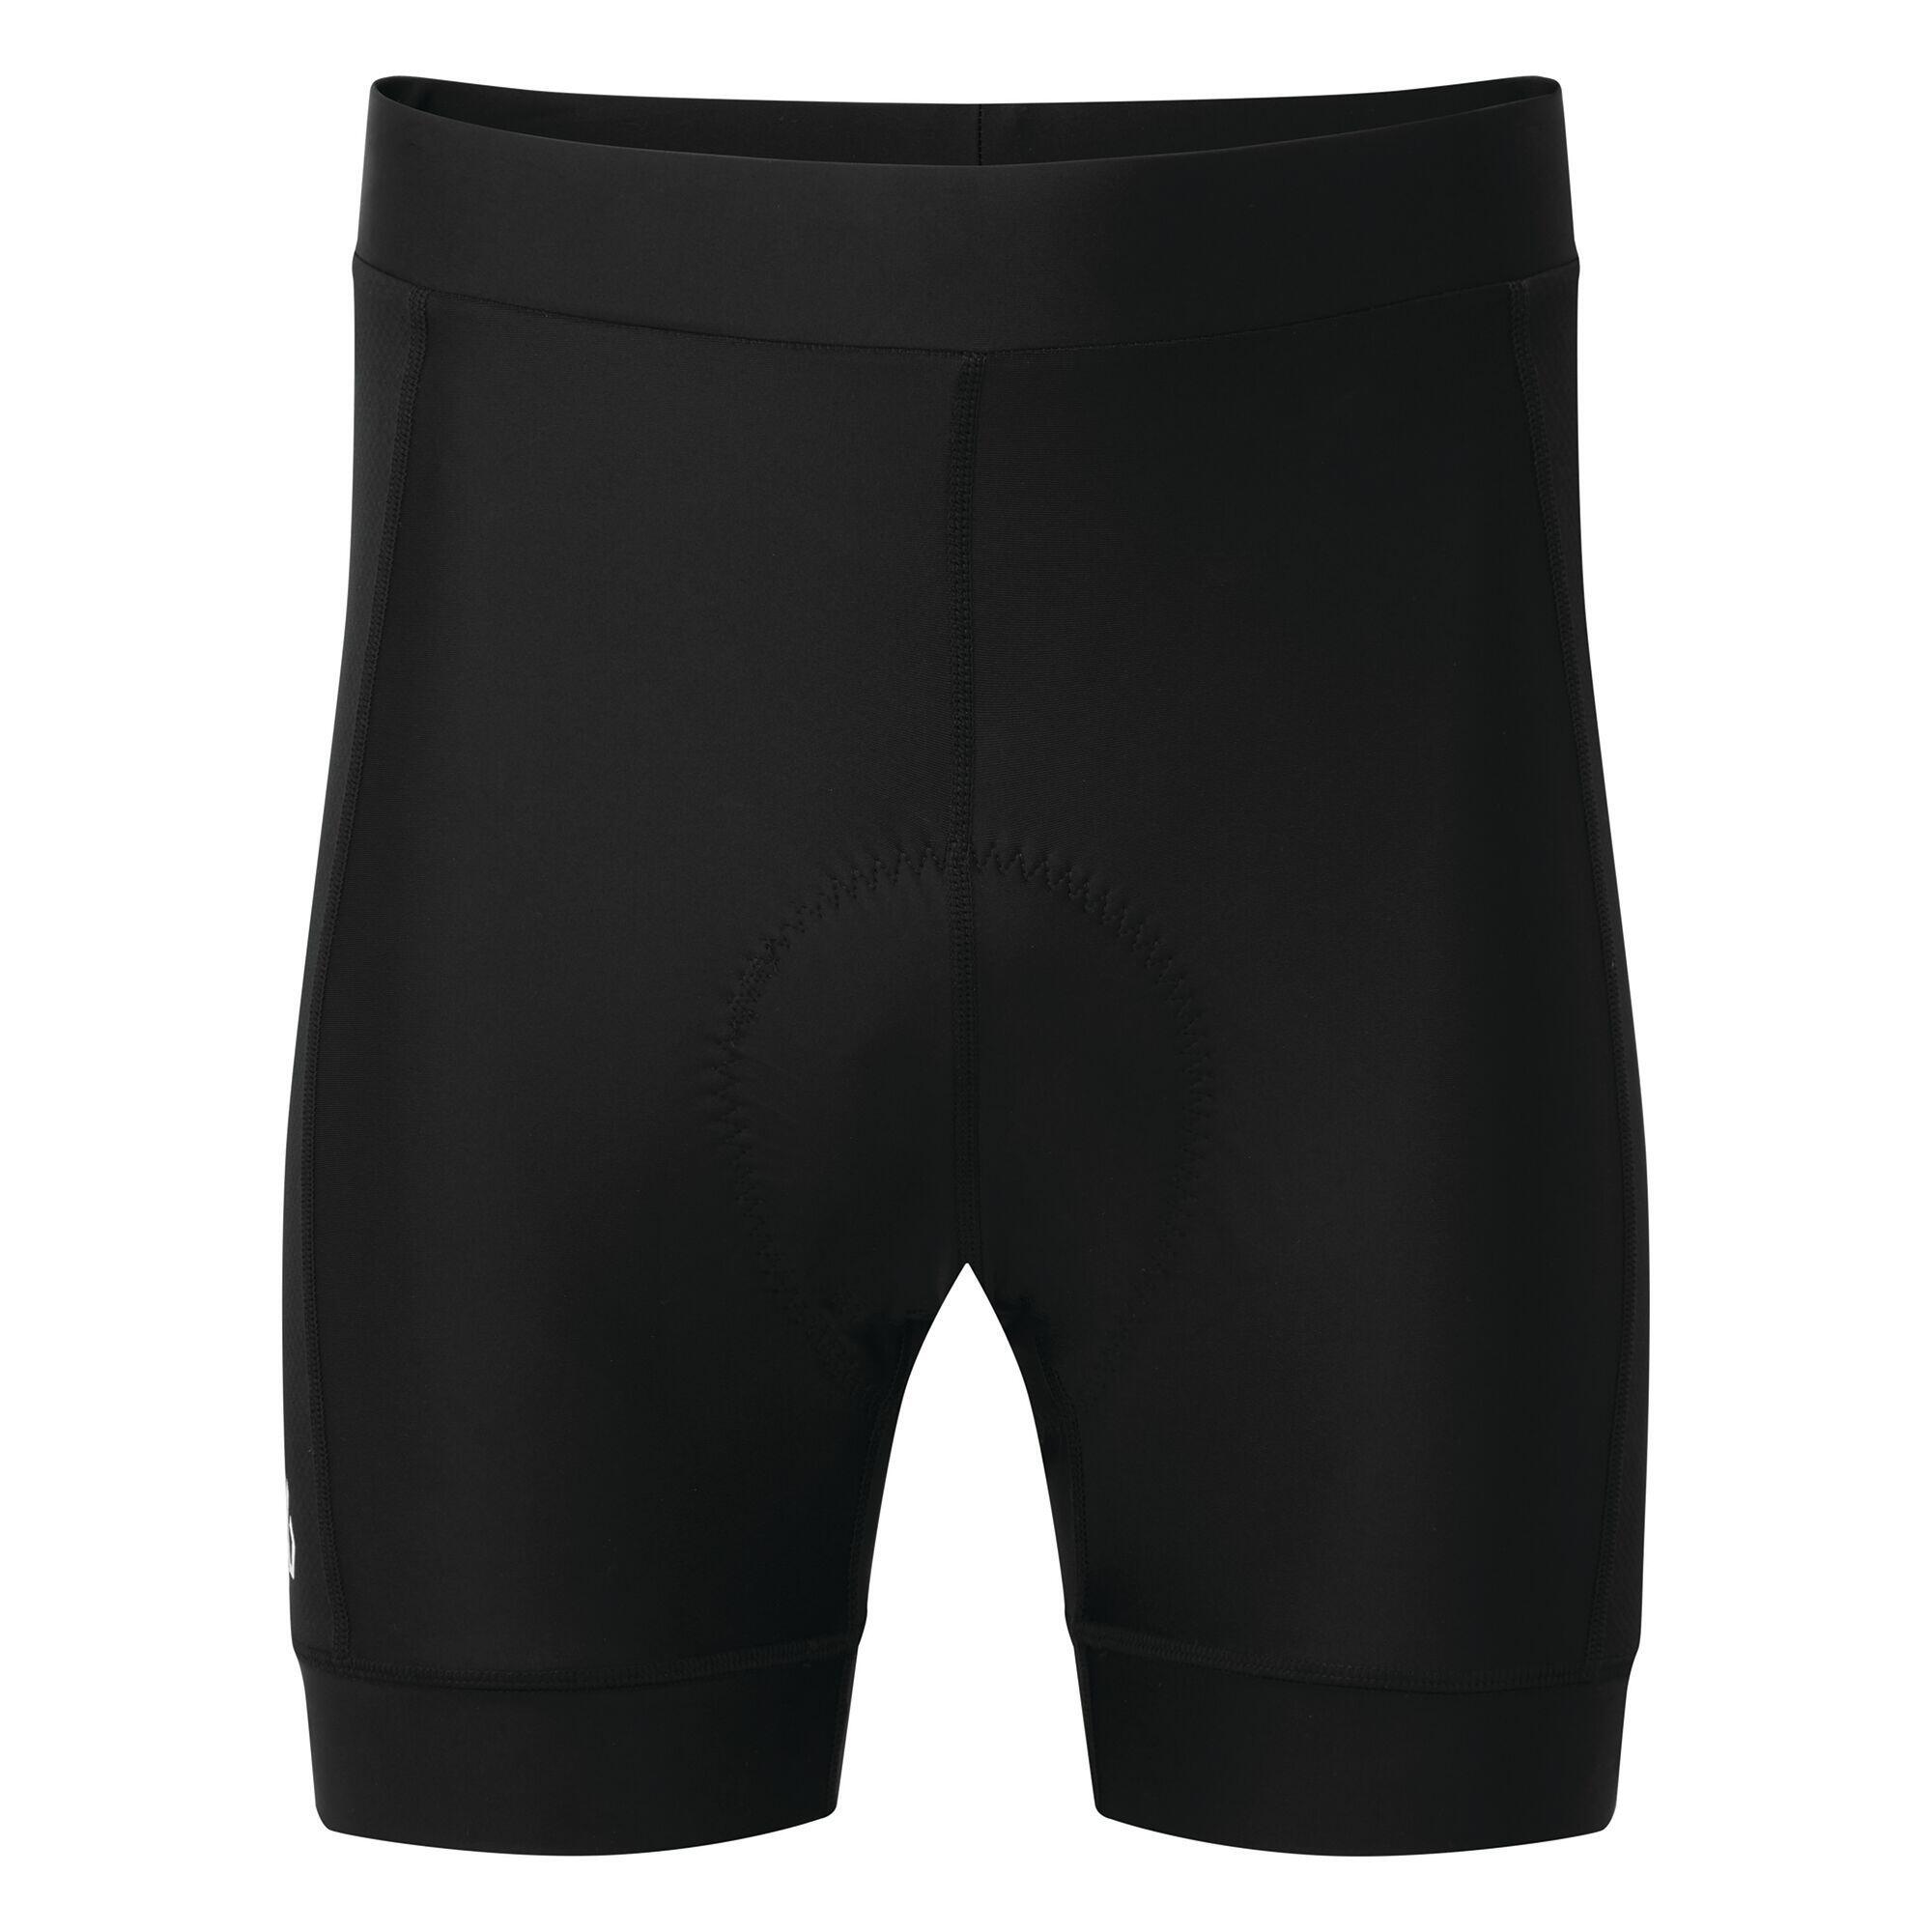 Mens Cycling Shorts (Black) 1/5